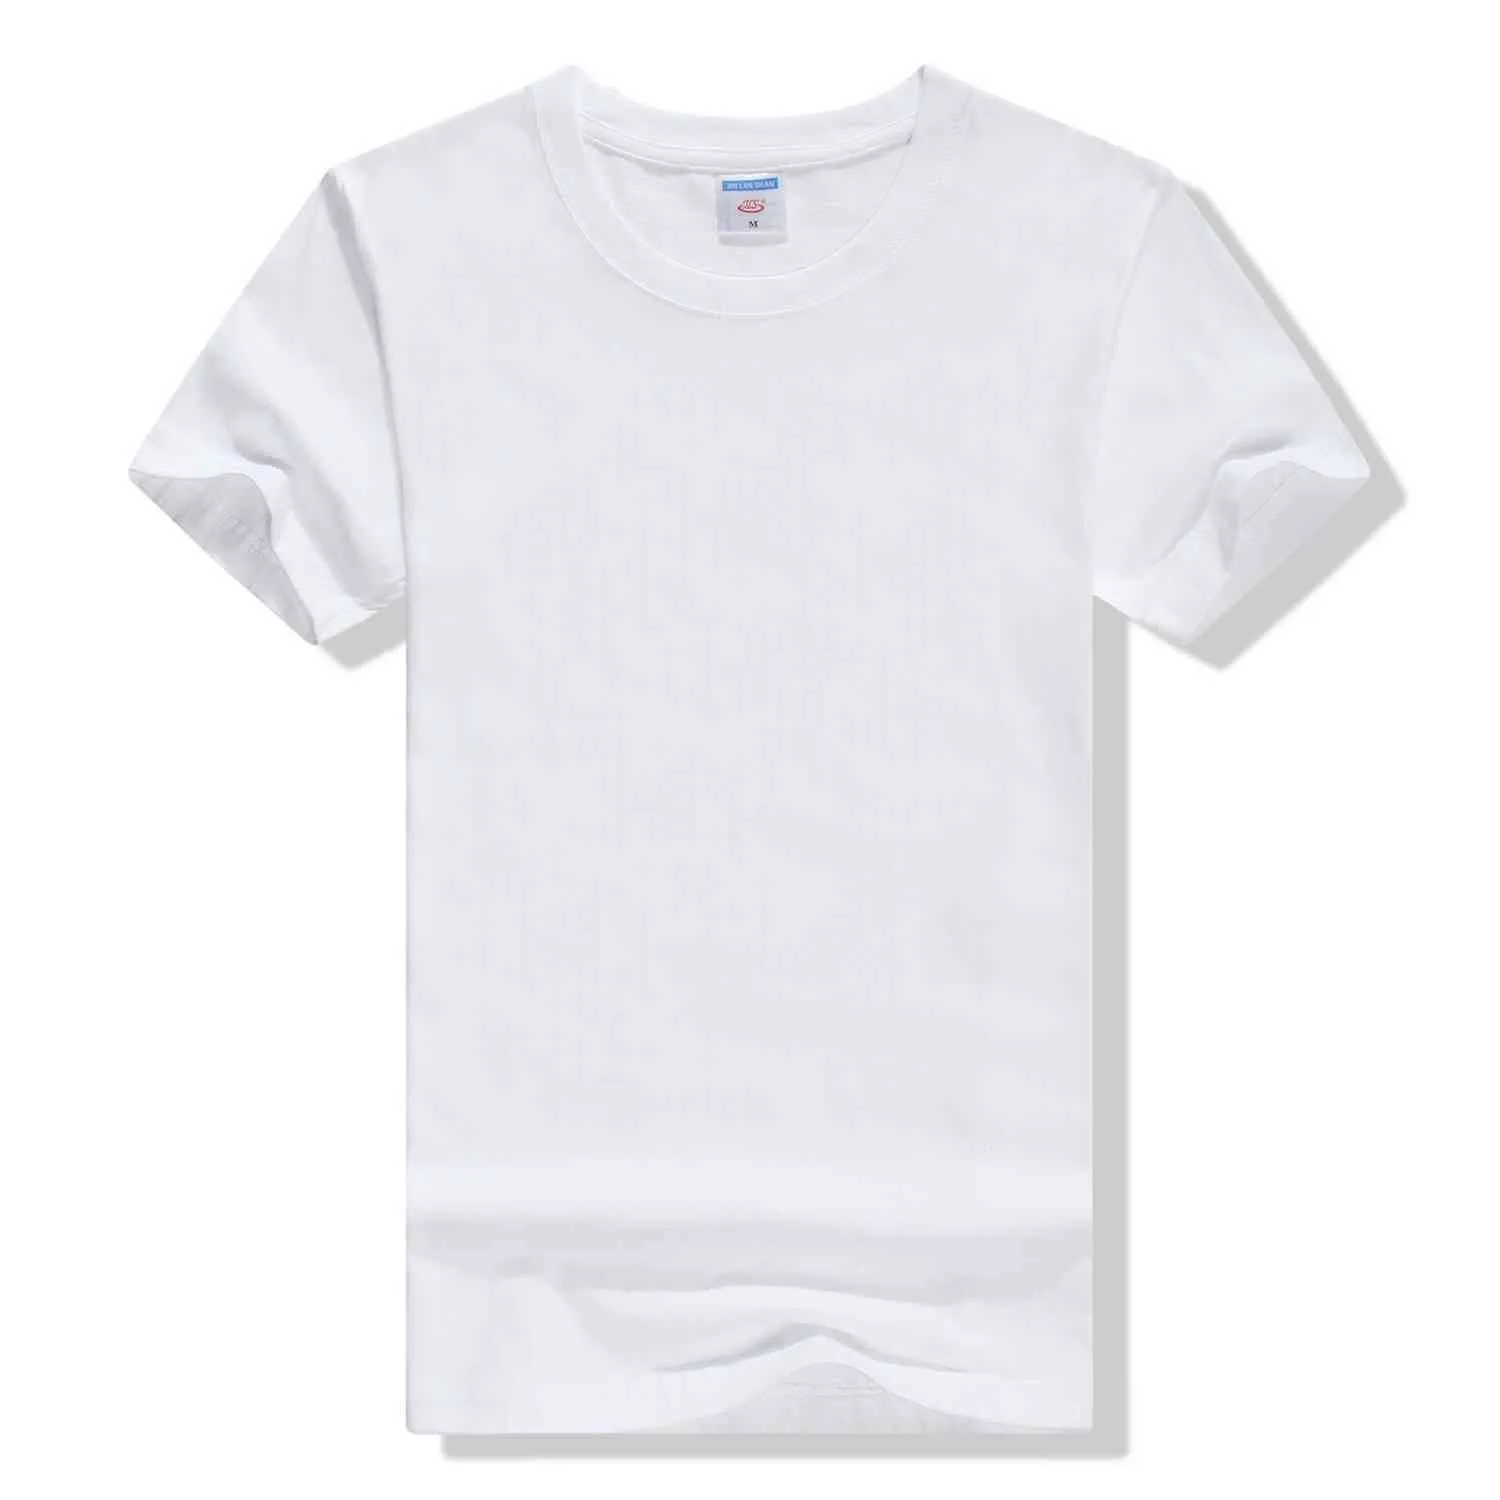 13 Cor Atacado Barato 100% Algodão Homem T Camisas de Manga Curta Moda Respirável Branco Preto Doce Cor Homem Camisetas Mens Top roupas